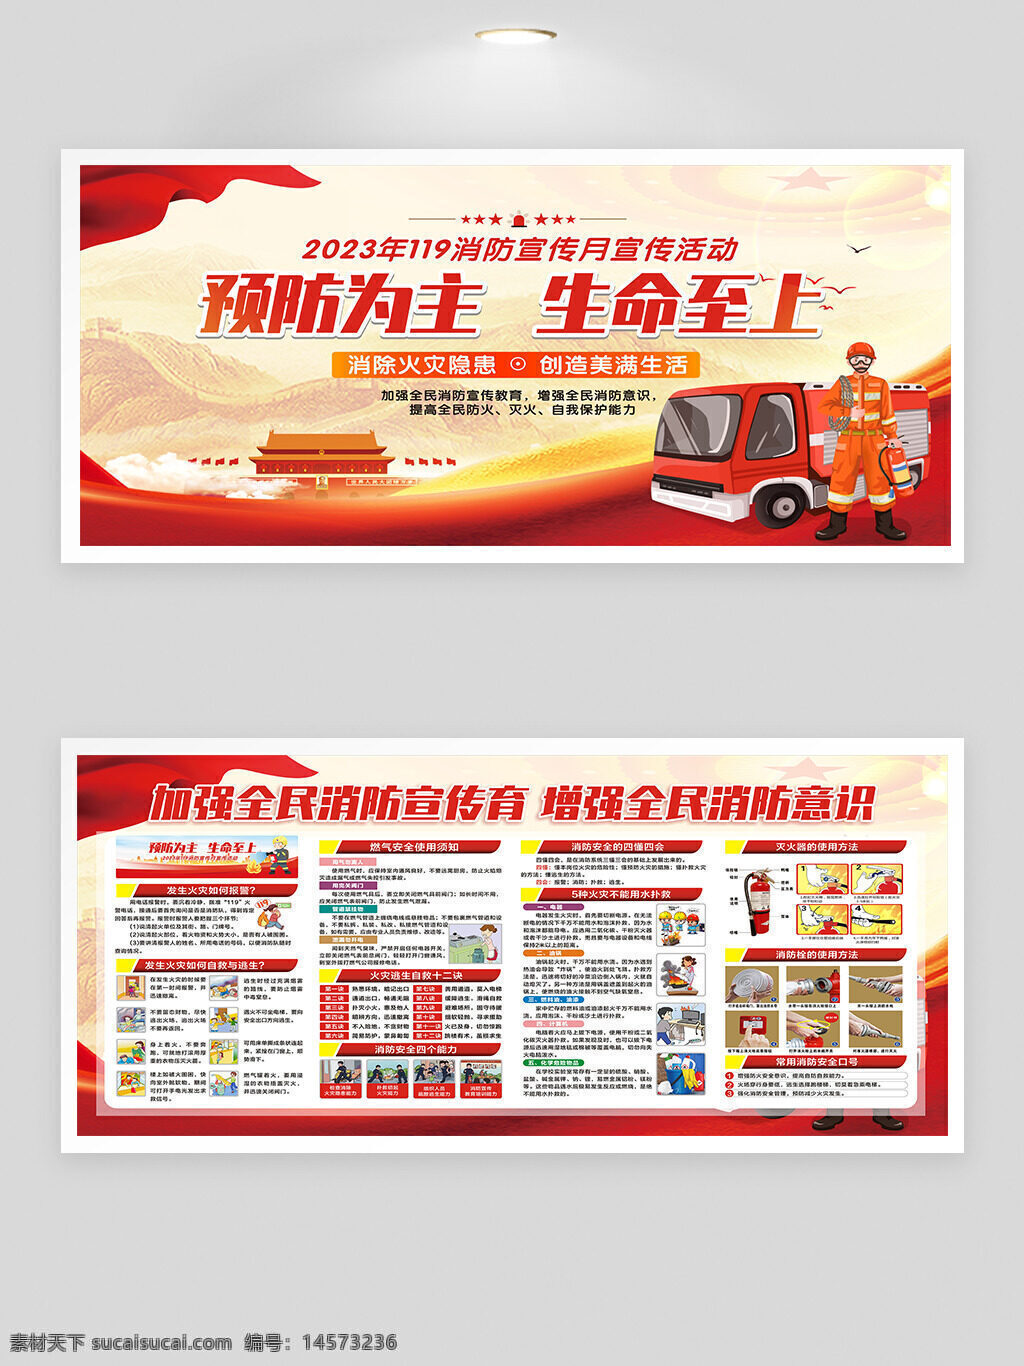 119消防 宣传月宣传活动 红色展板 2023年主题 消防安全防火知识展板 消防安全防火宣传展板